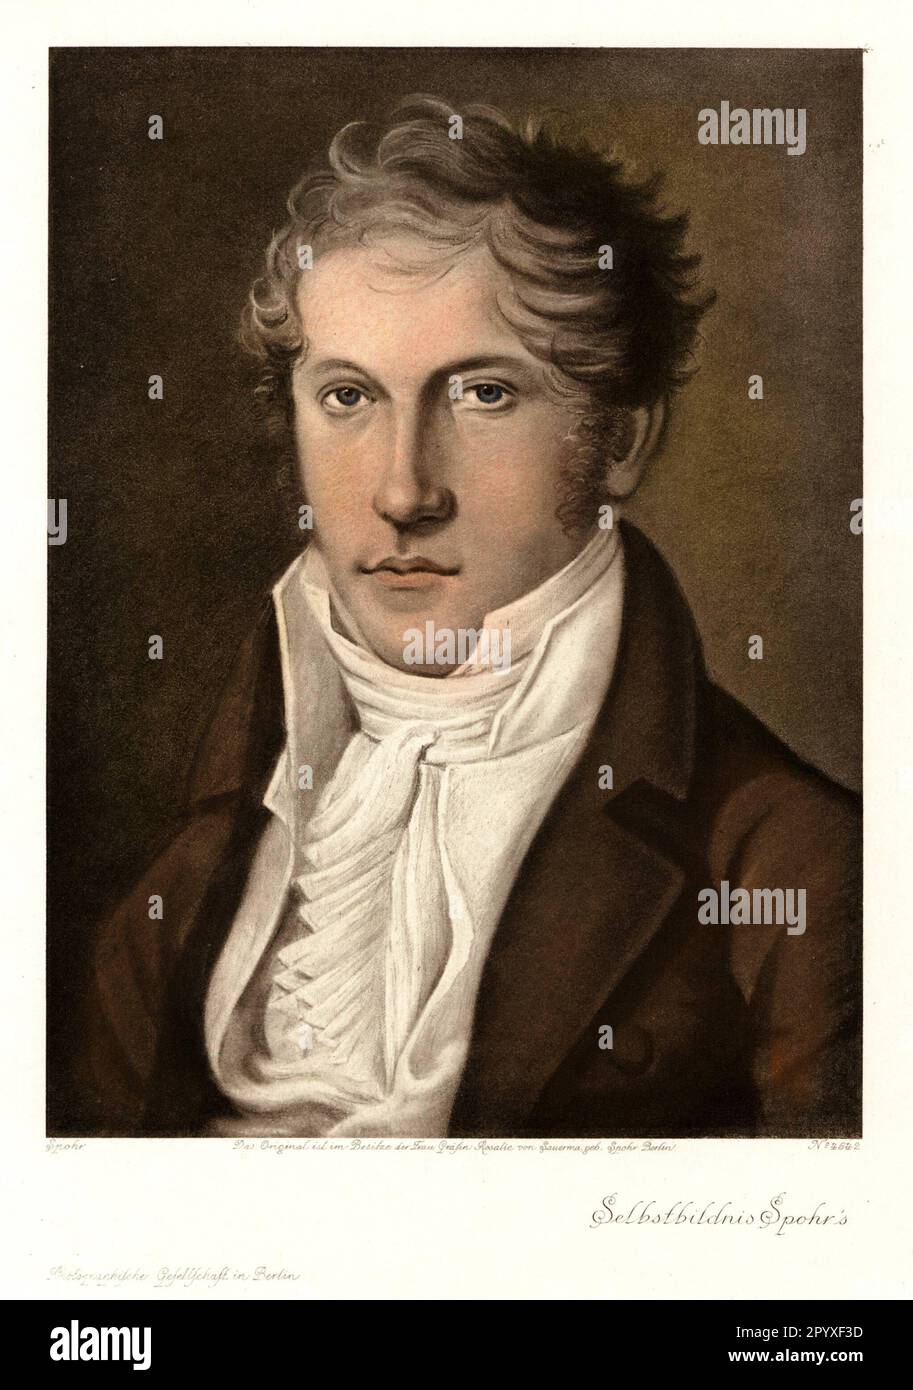 Louis Spohr (1784-1859), compositeur, violoniste et chef d'orchestre allemand. Autoportrait. Photo: Heliogravure, Corpus Imaginum, Collection Hanfstaengl. [traduction automatique] Banque D'Images